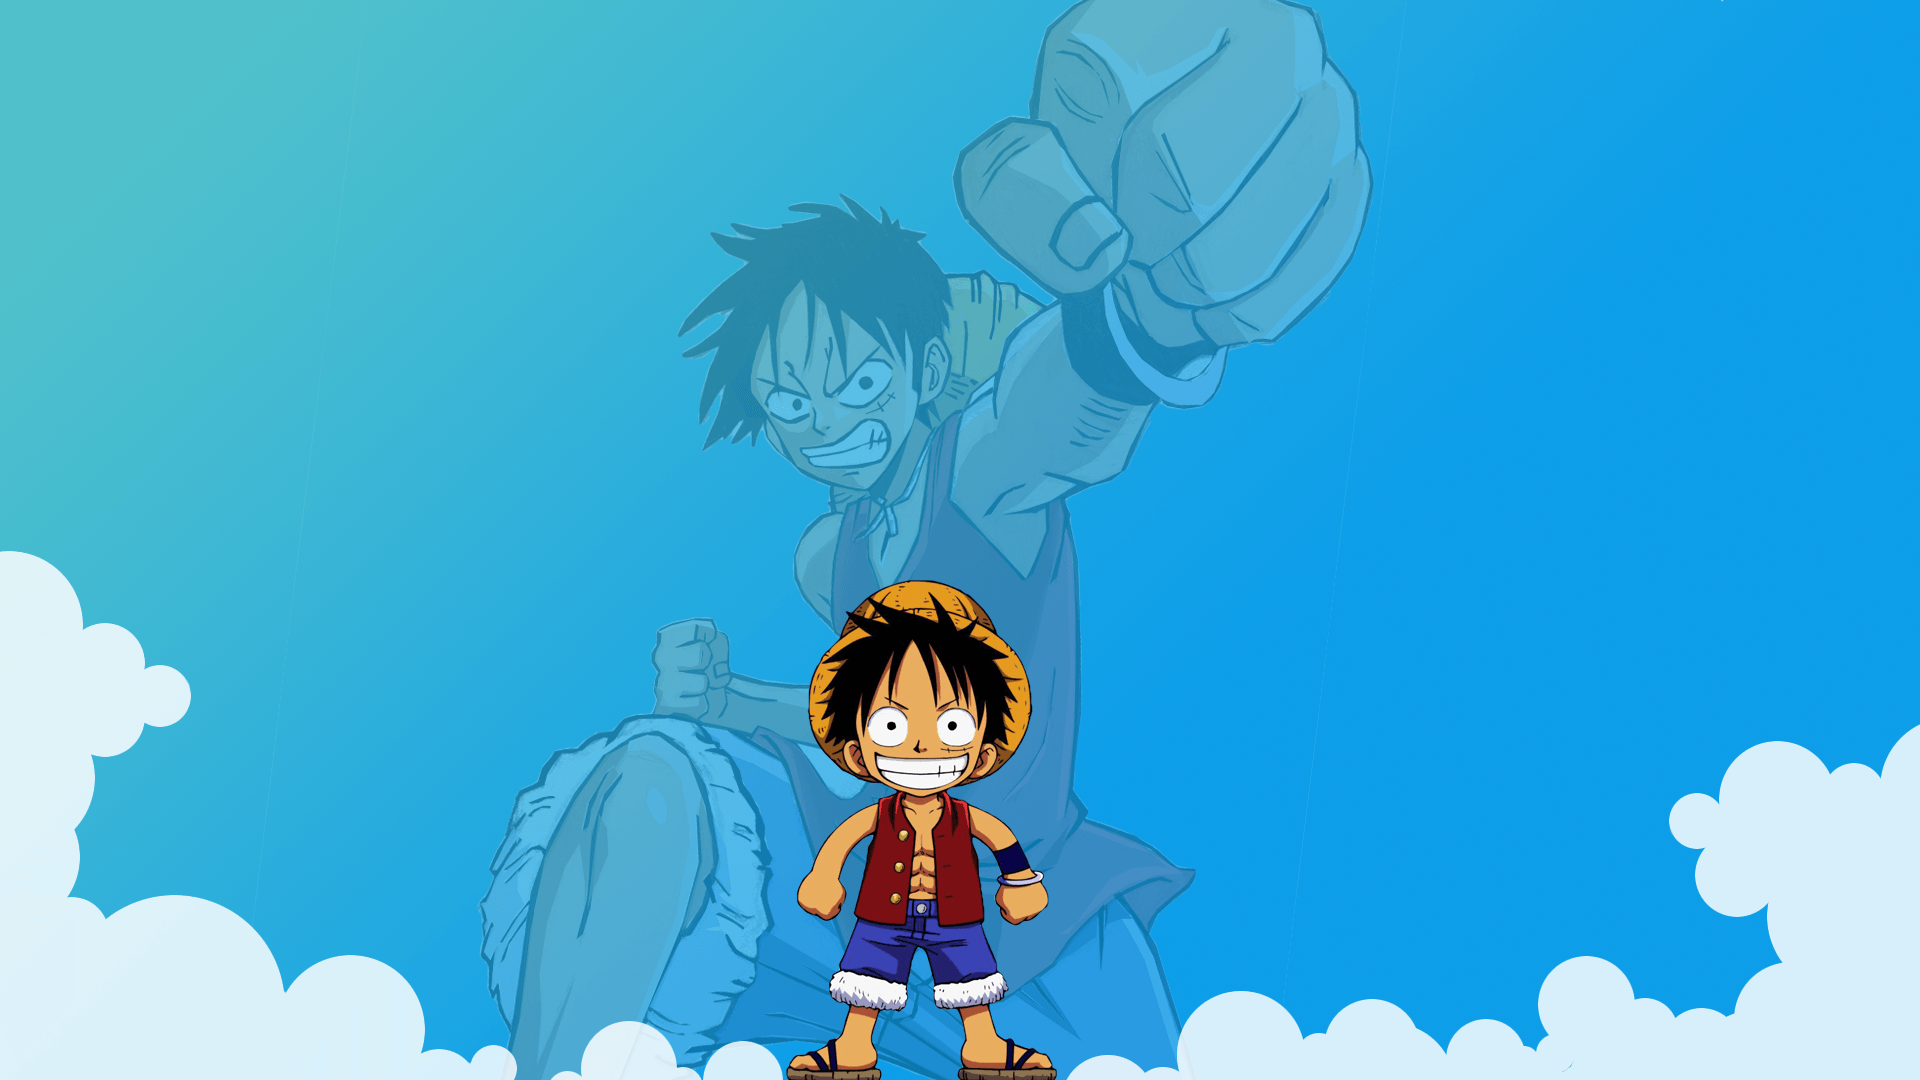 Luffy là một trong những nhân vật phản diện được yêu thích nhất của One Piece và bạn sẽ khám phá được những hình ảnh nghệ thuật đẹp nhất về cậu ấy. Sự kiên trì và sự gan dạ của Luffy sẽ truyền cảm hứng cho bạn trong cuộc sống hàng ngày.